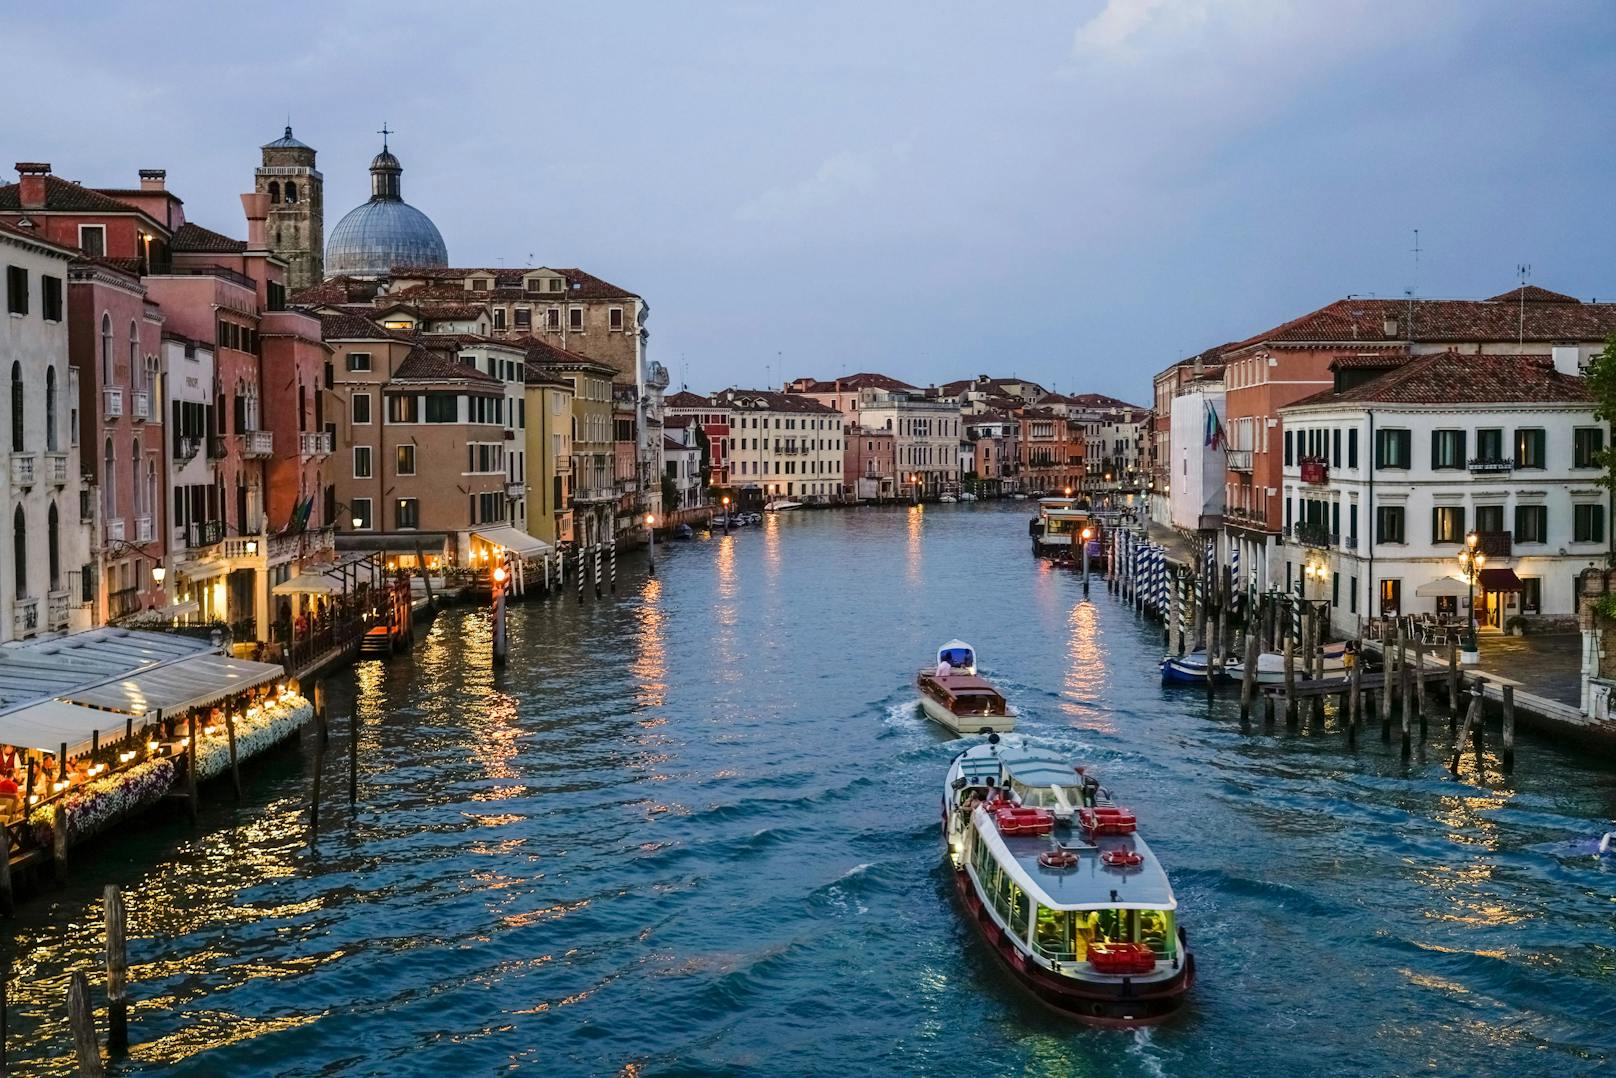 Der Canal Grande ist eine der bekanntesten Sehenswürdigkeiten Venedigs.